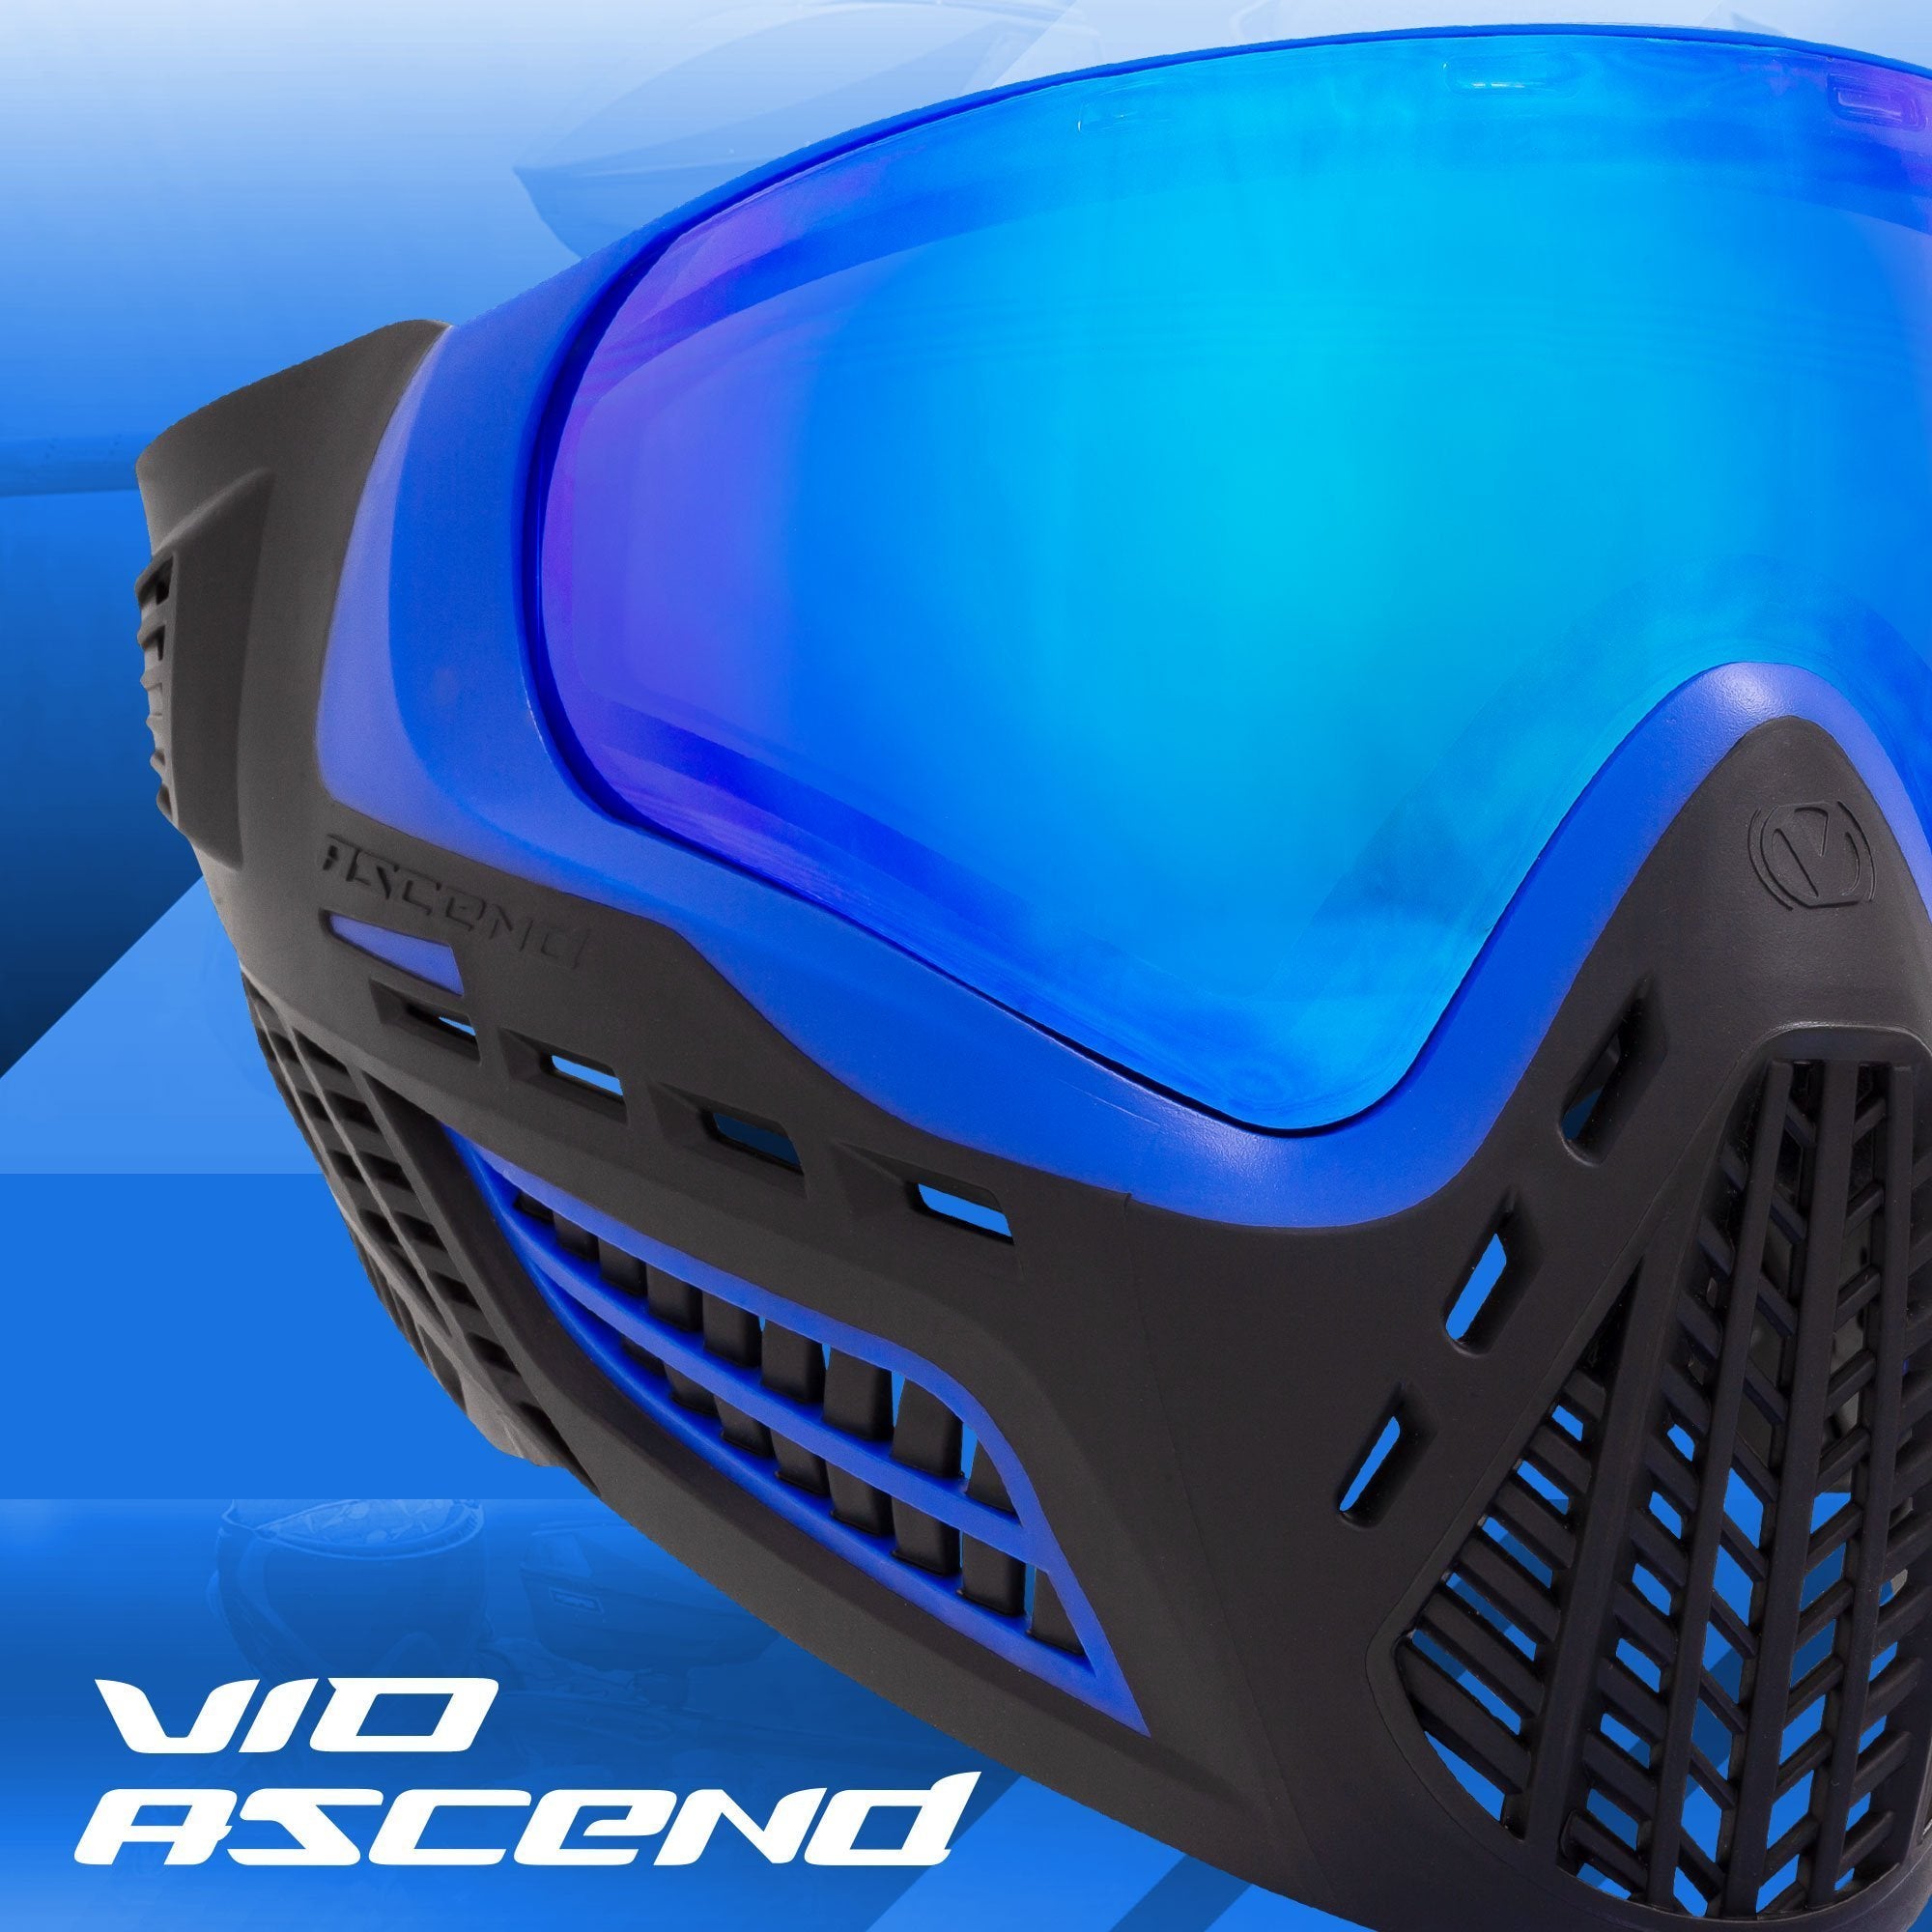 Virtue VIO Ascend Goggle - Blue Ice